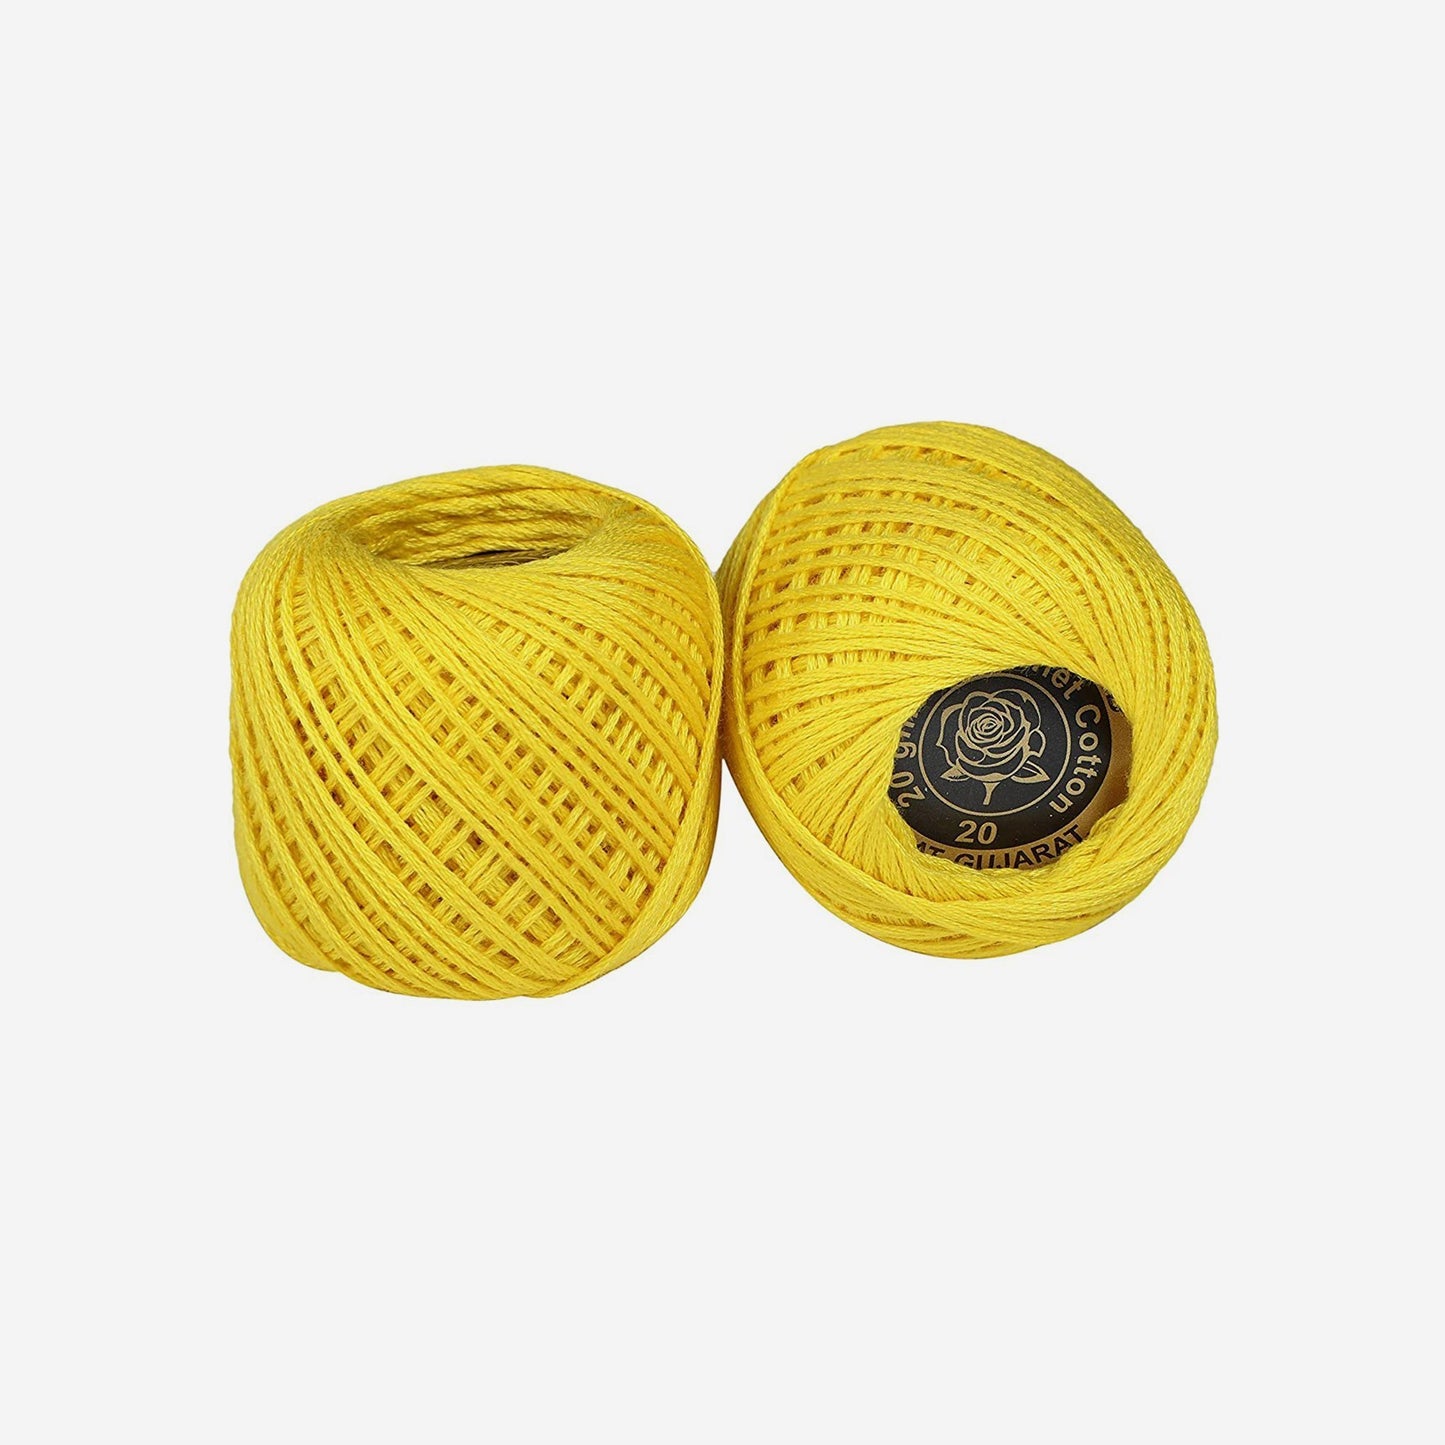 Hand-crochet hoops (Variation 4)